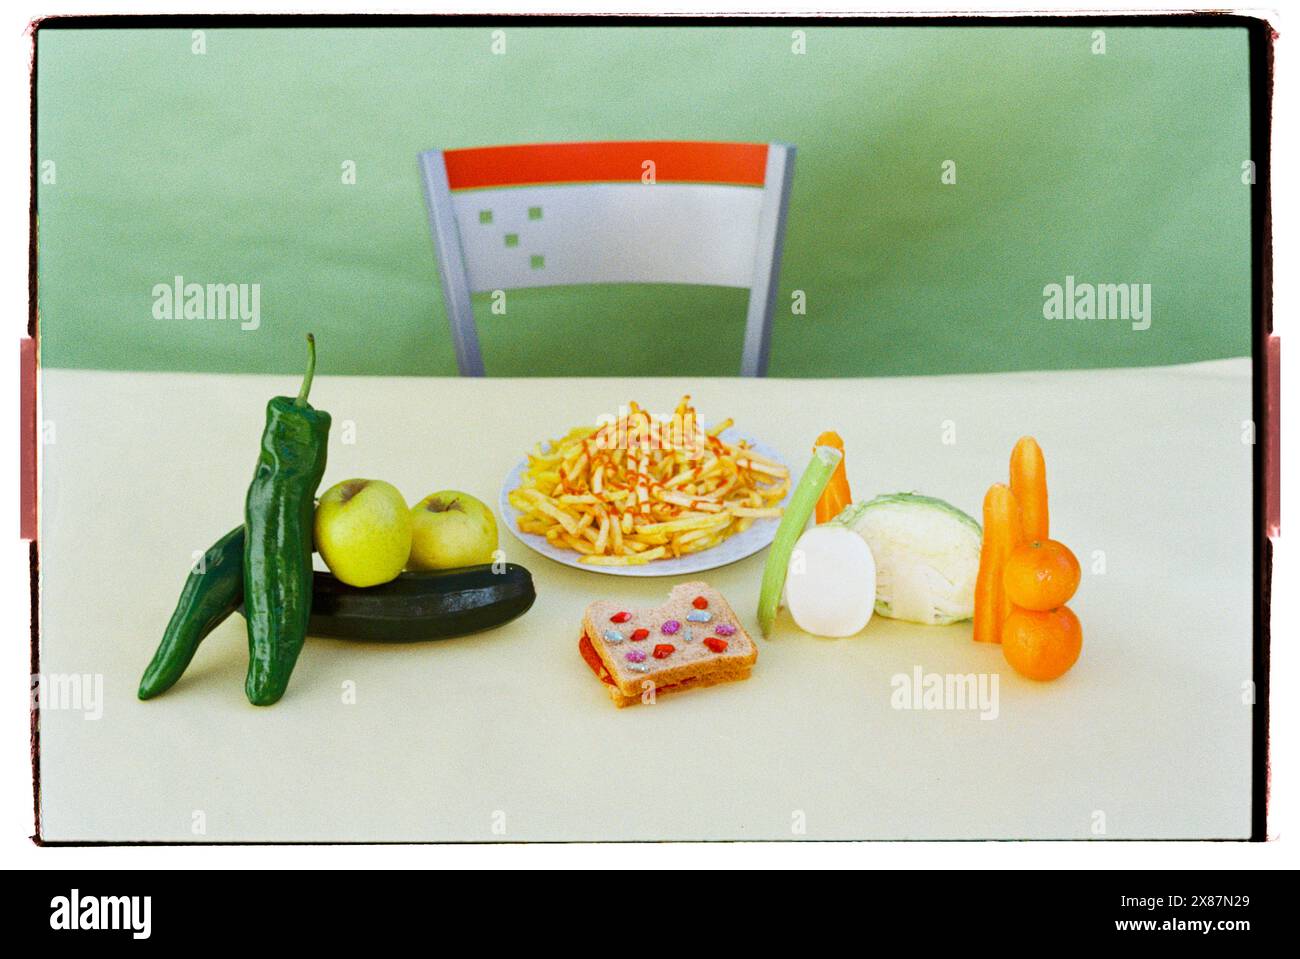 Piatto di patatine fritte vicino alle gemme sandwich con frutta e verdura varie sul tavolo Foto Stock